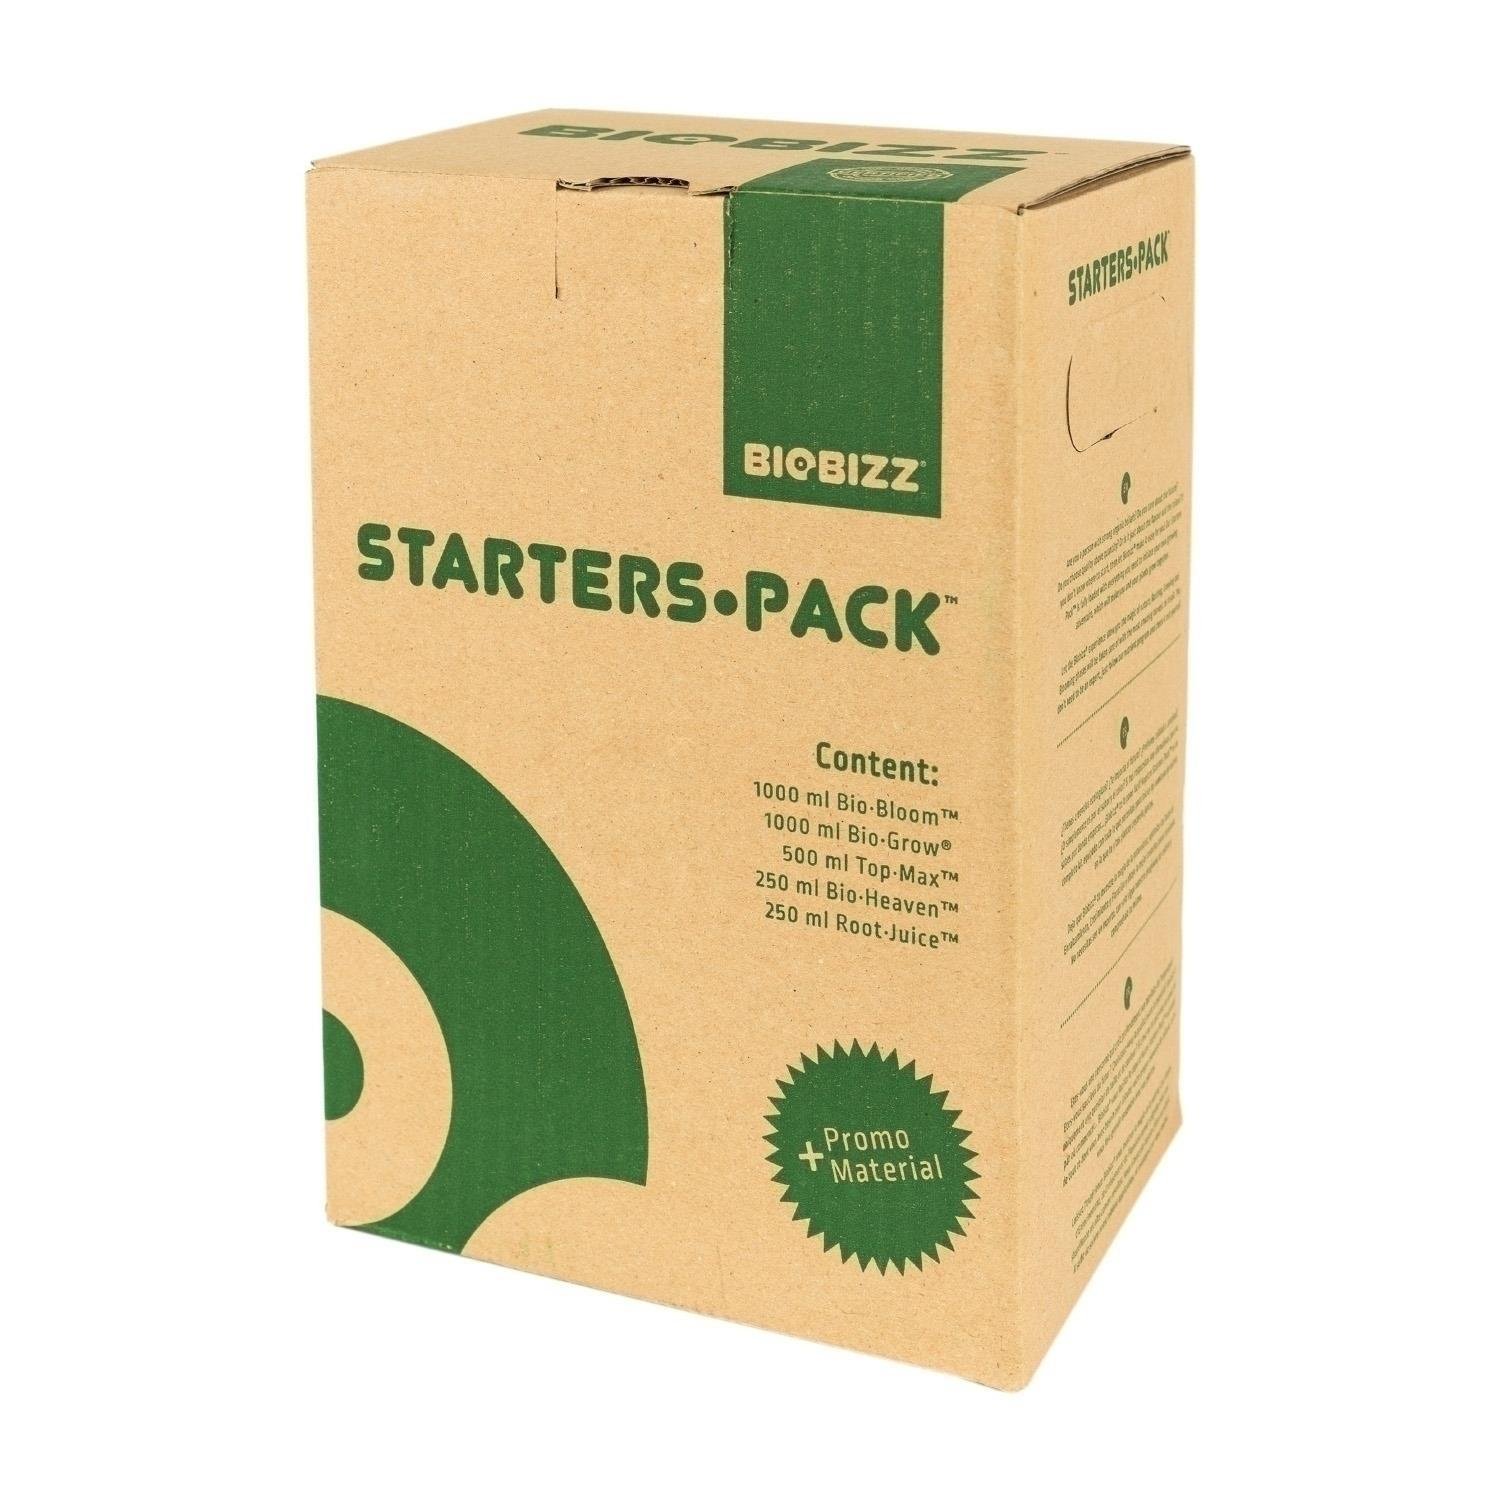 BioBizz Starters-Pack